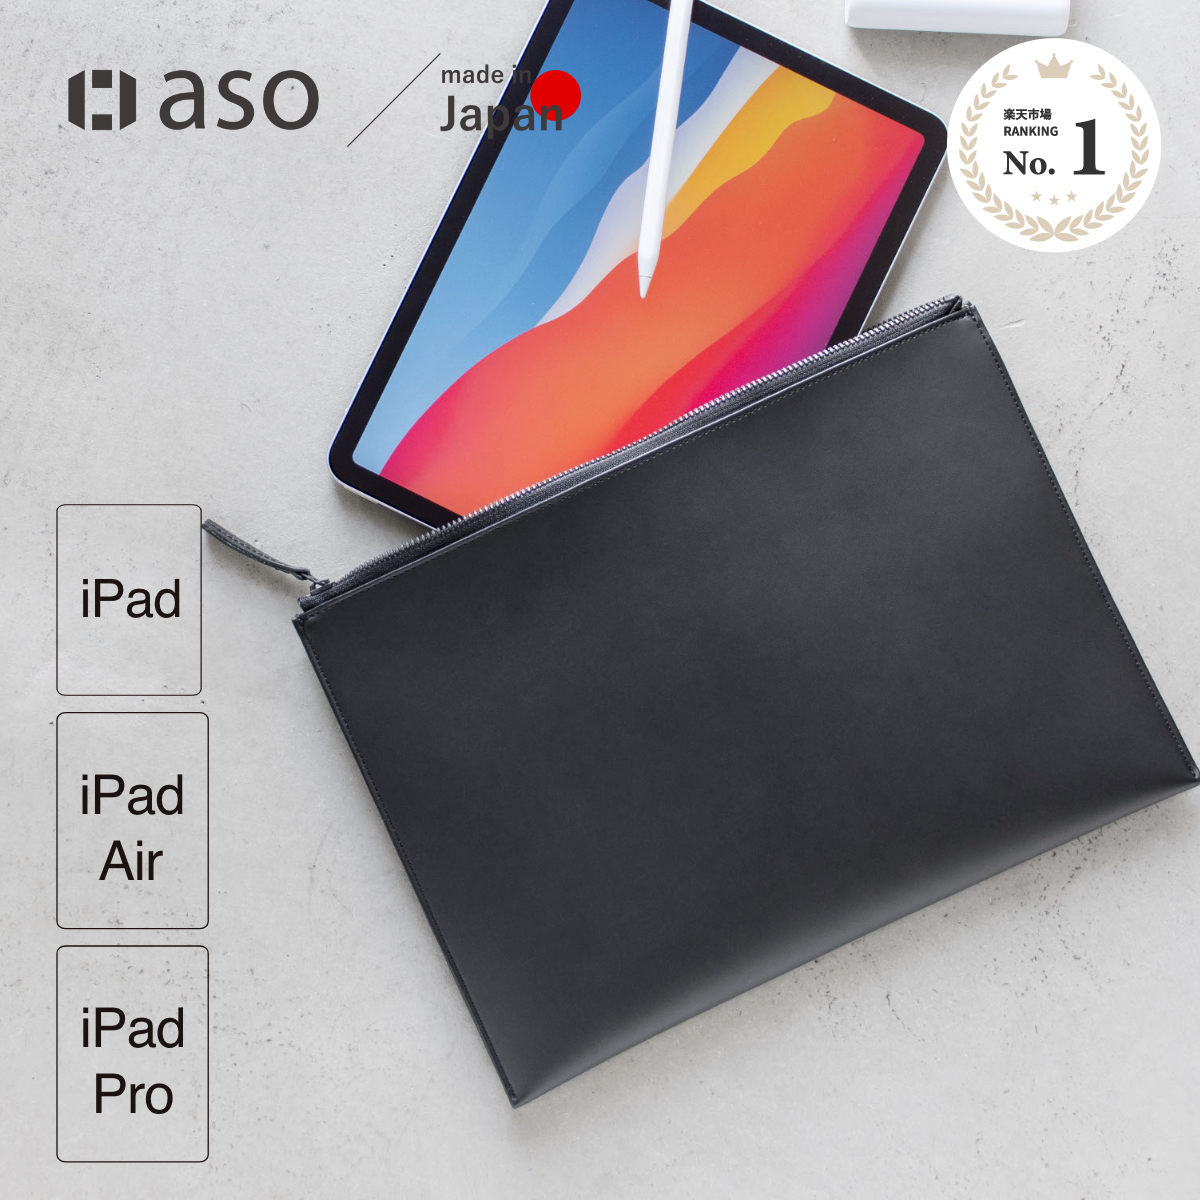 【aso】Layer Pouch レイヤーポーチ asoboze アソボーゼ iPadポーチ ipad pro 10.5 スリーブ ケース iPad  Pro 10.5インチ ポーチ 11インチ アイパッド プロ タブレット ビジネス 新生活 軽量 | aso 楽天市場店